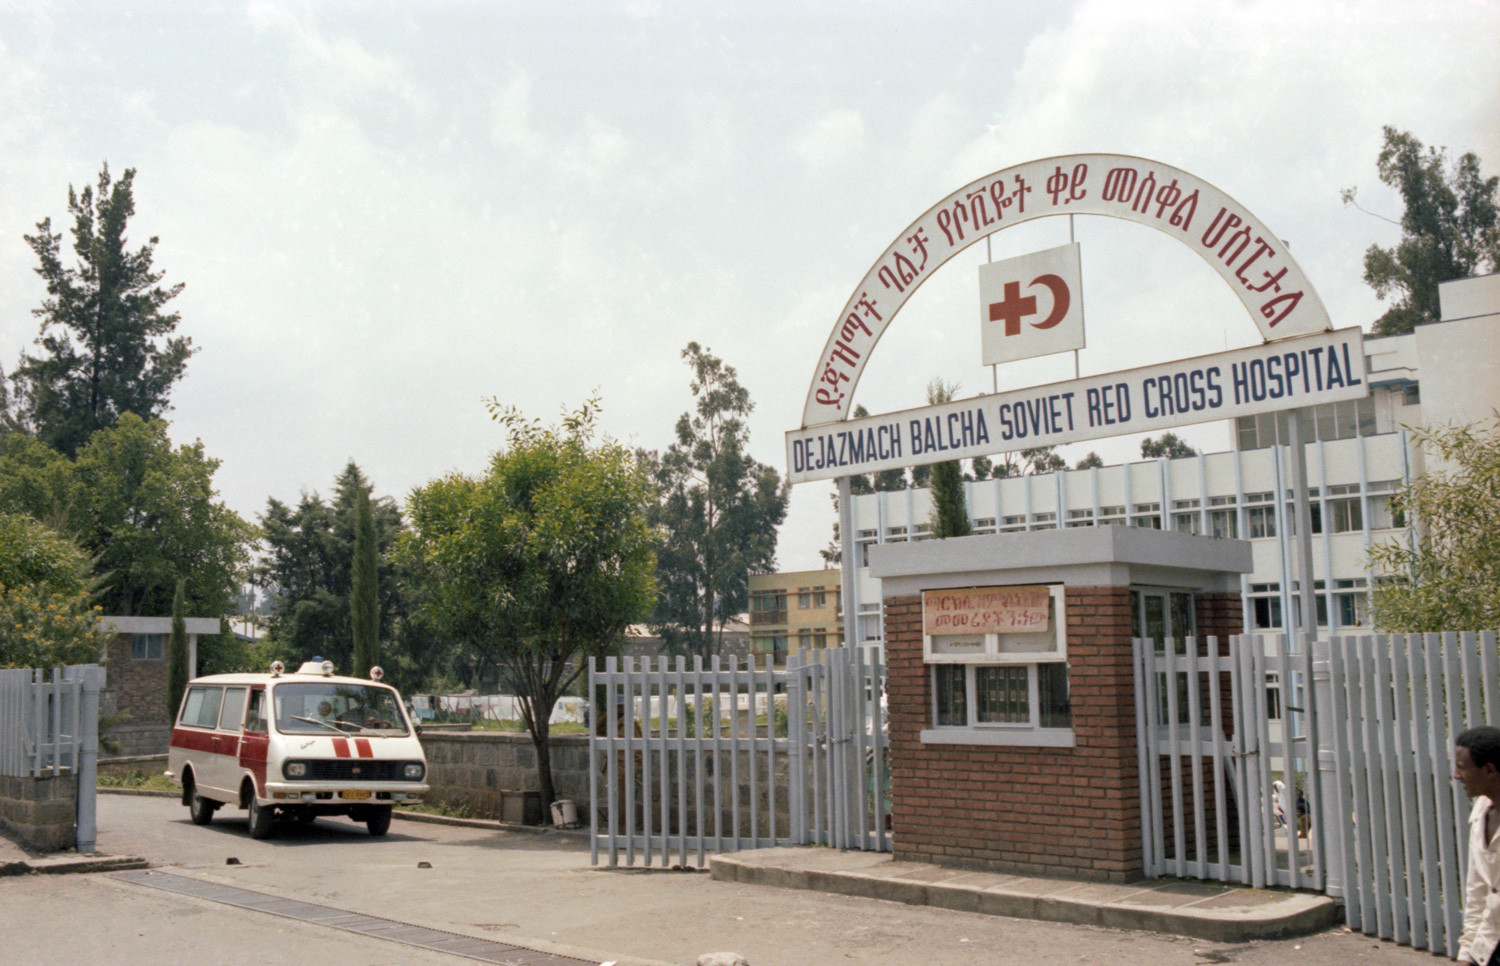 Sovjetska bolnica u Adis Abebi (Etiopija) s 225 kreveta, 1983.

